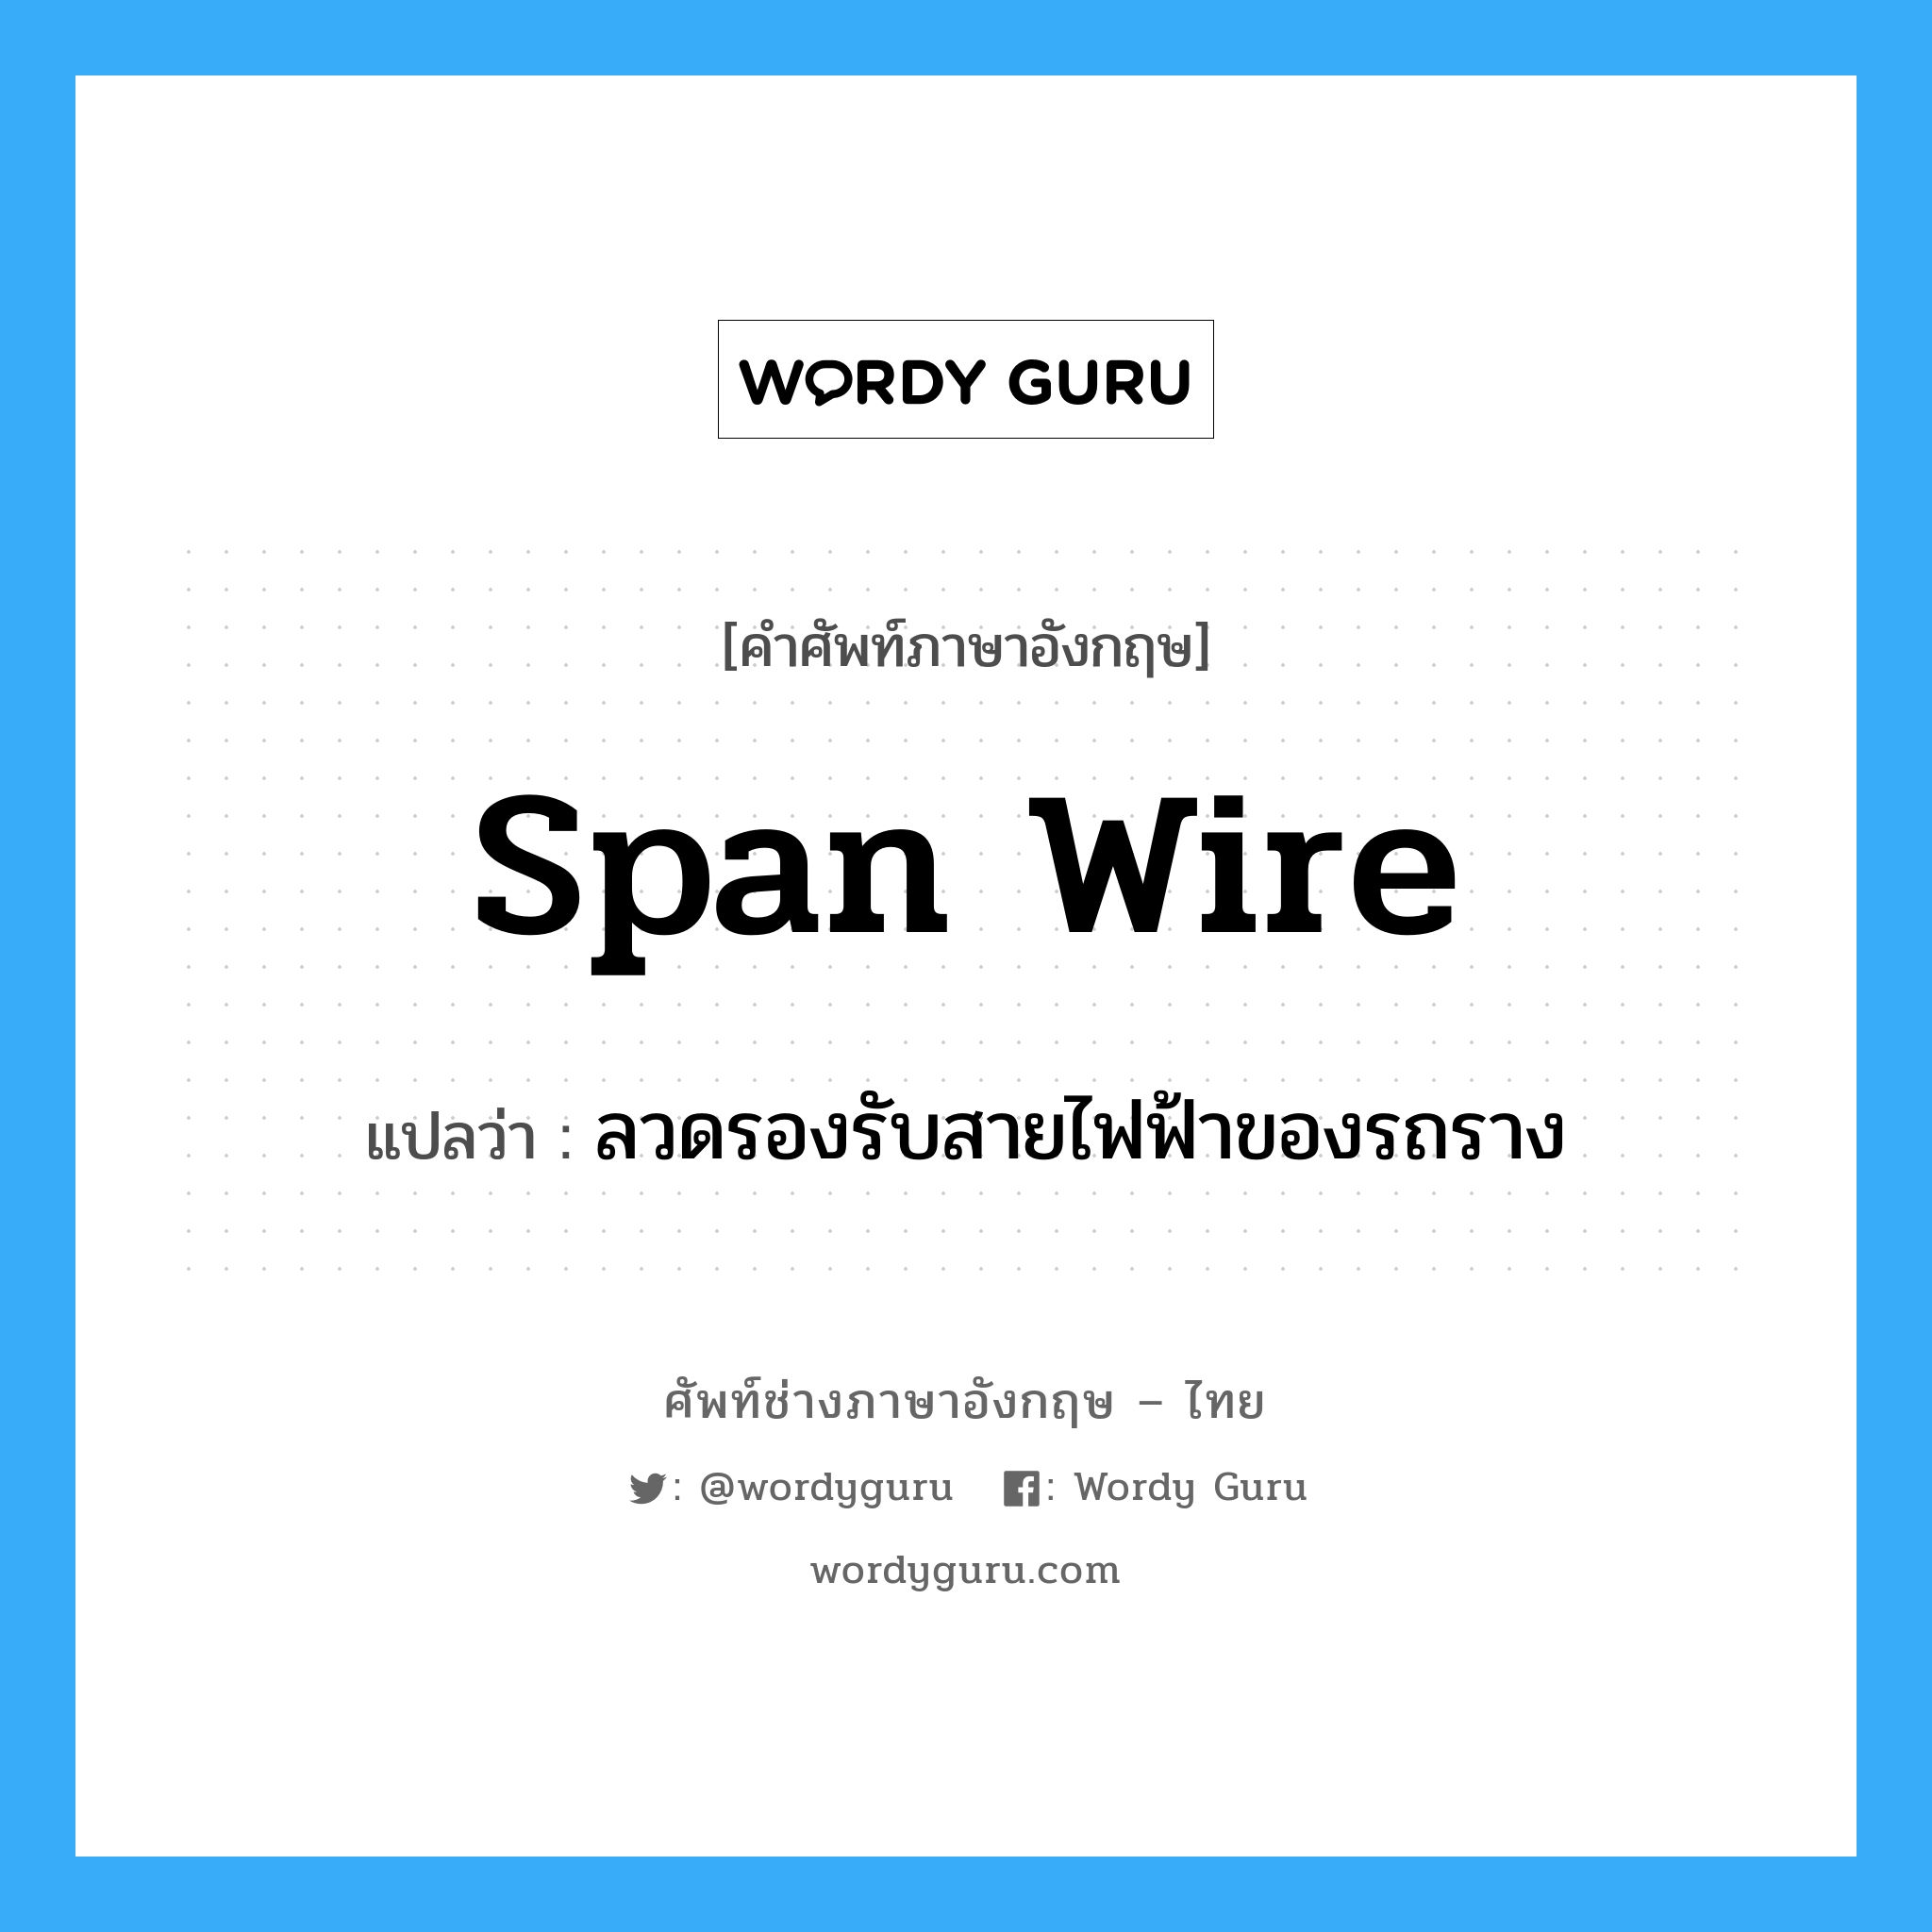 span wire แปลว่า?, คำศัพท์ช่างภาษาอังกฤษ - ไทย span wire คำศัพท์ภาษาอังกฤษ span wire แปลว่า ลวดรองรับสายไฟฟ้าของรถราง